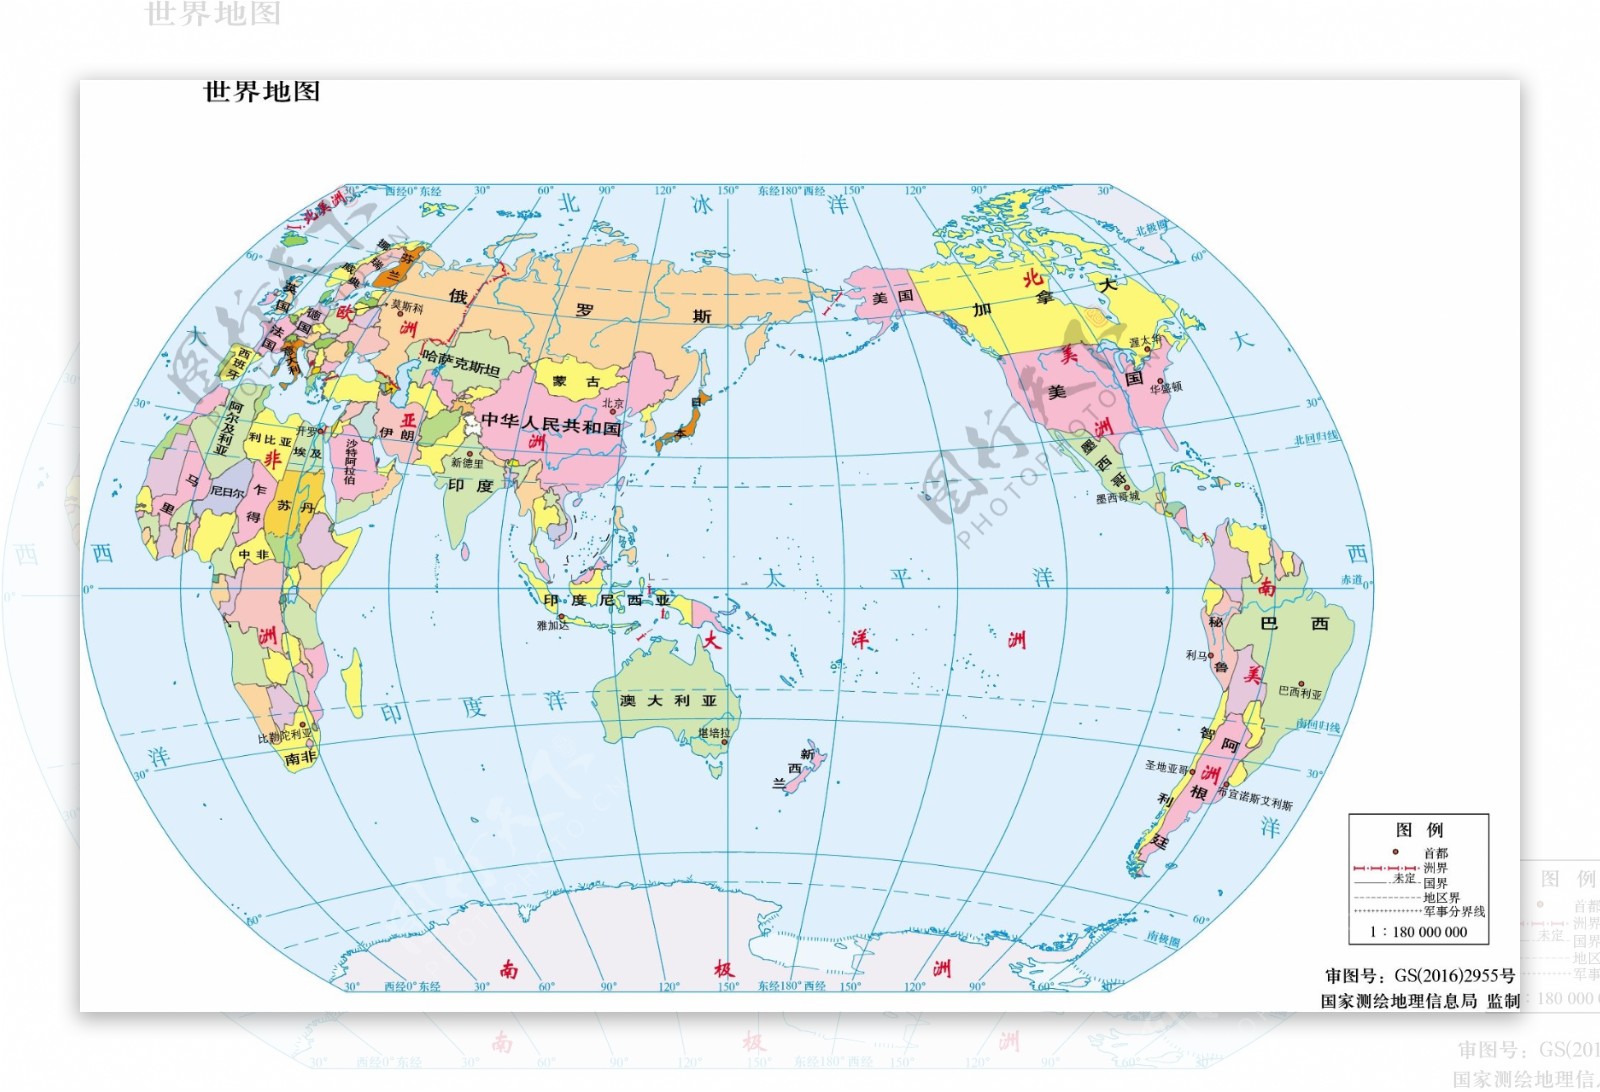 世界地图11.8亿